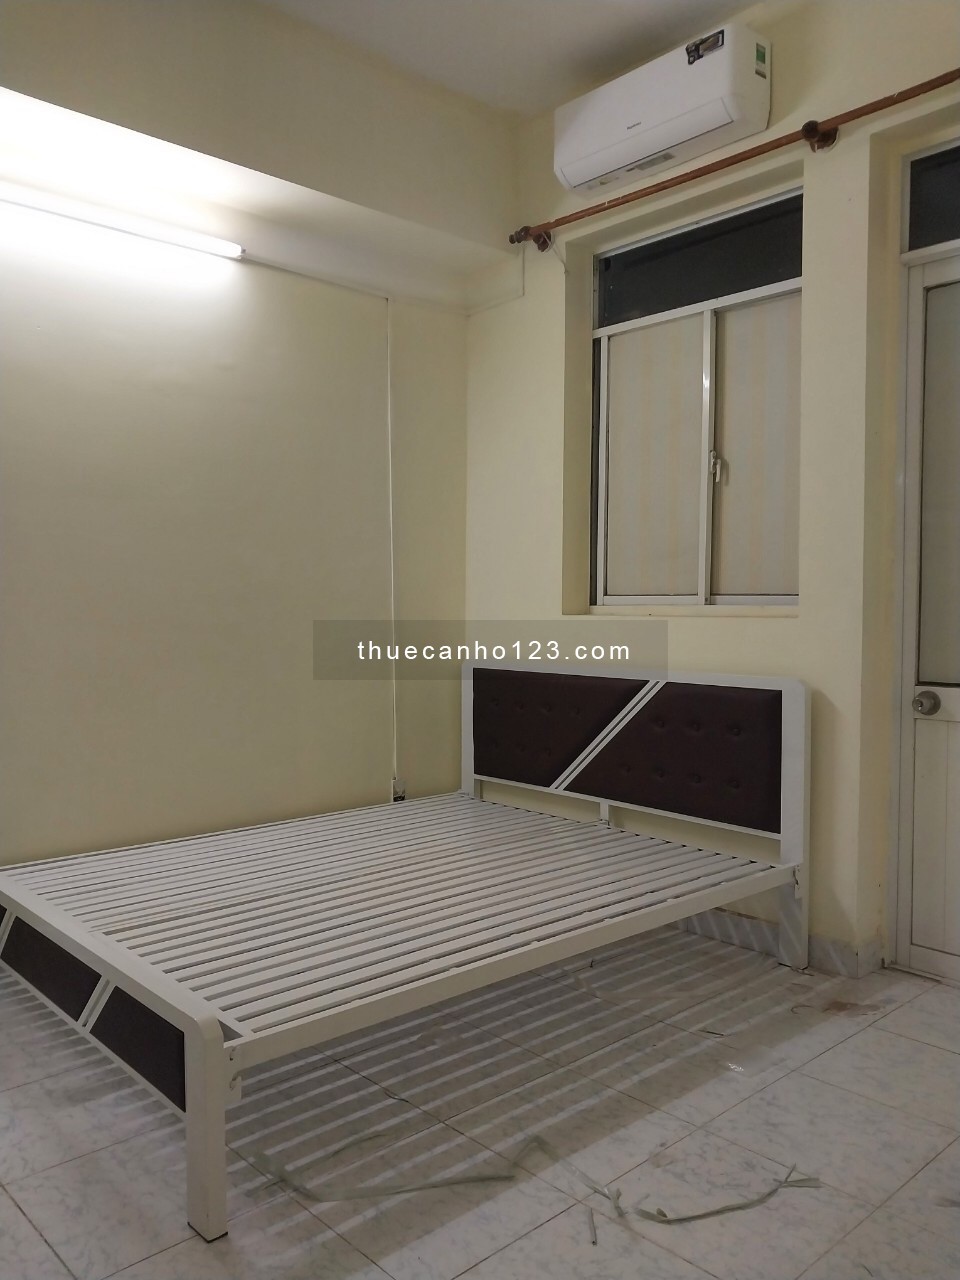 Cần cho thuê căn hộ chung cư Lê Thành , Diện tích 60m2, 2phòng ngủ , nội thất , giá 6.5tr